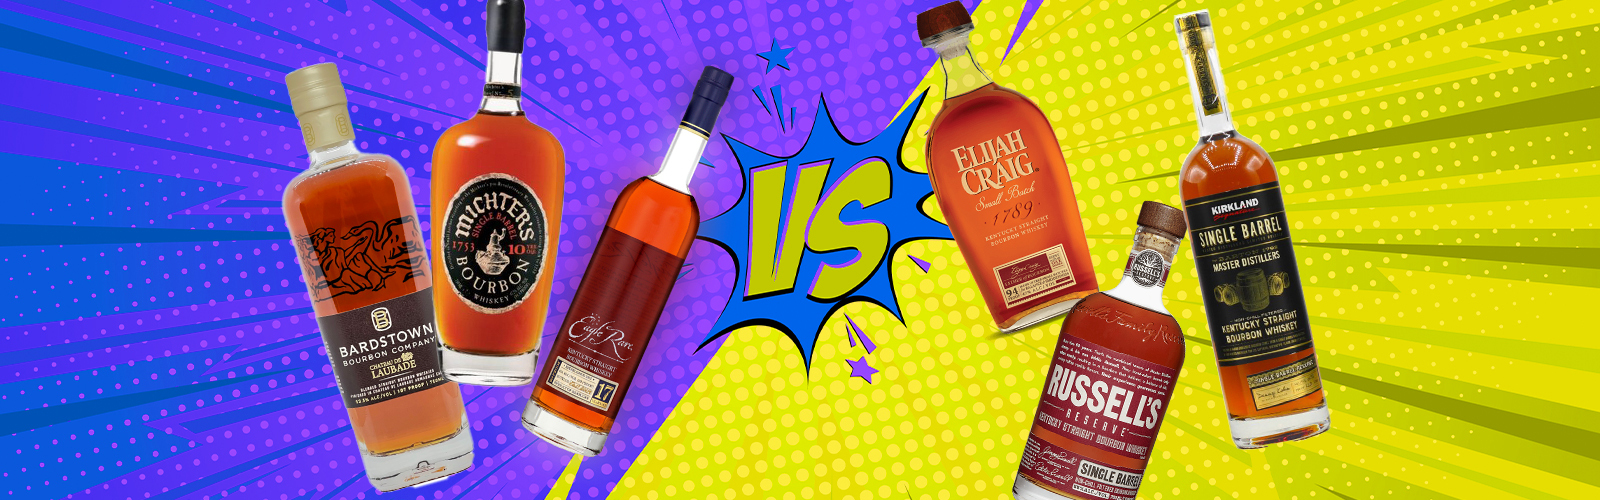 Unicorn Bourbon vs. Affordable Bourbon Battle